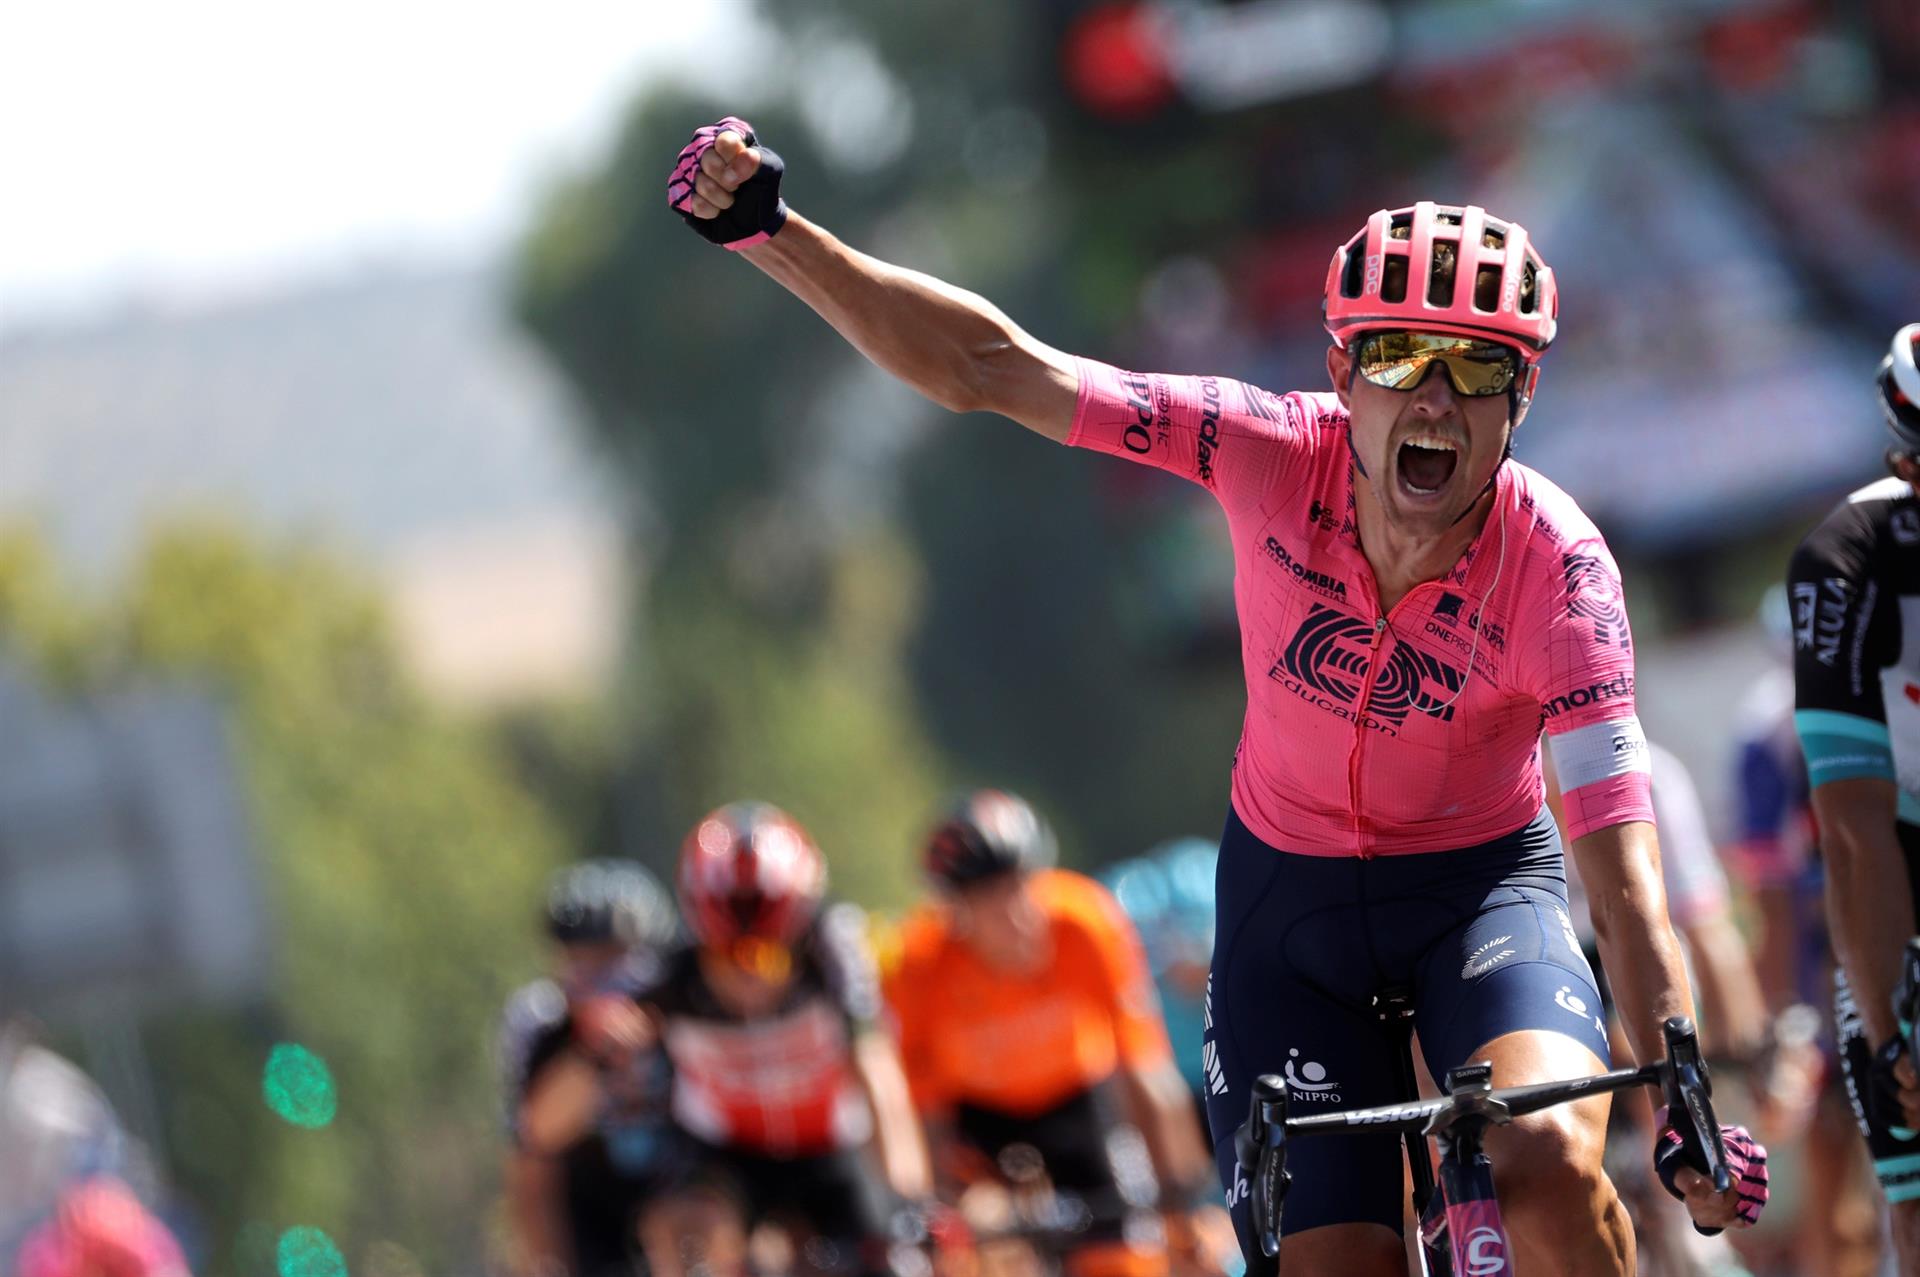 El todoterreno Magnus Cort se impone al esprint y repite victoria en La Vuelta 2021